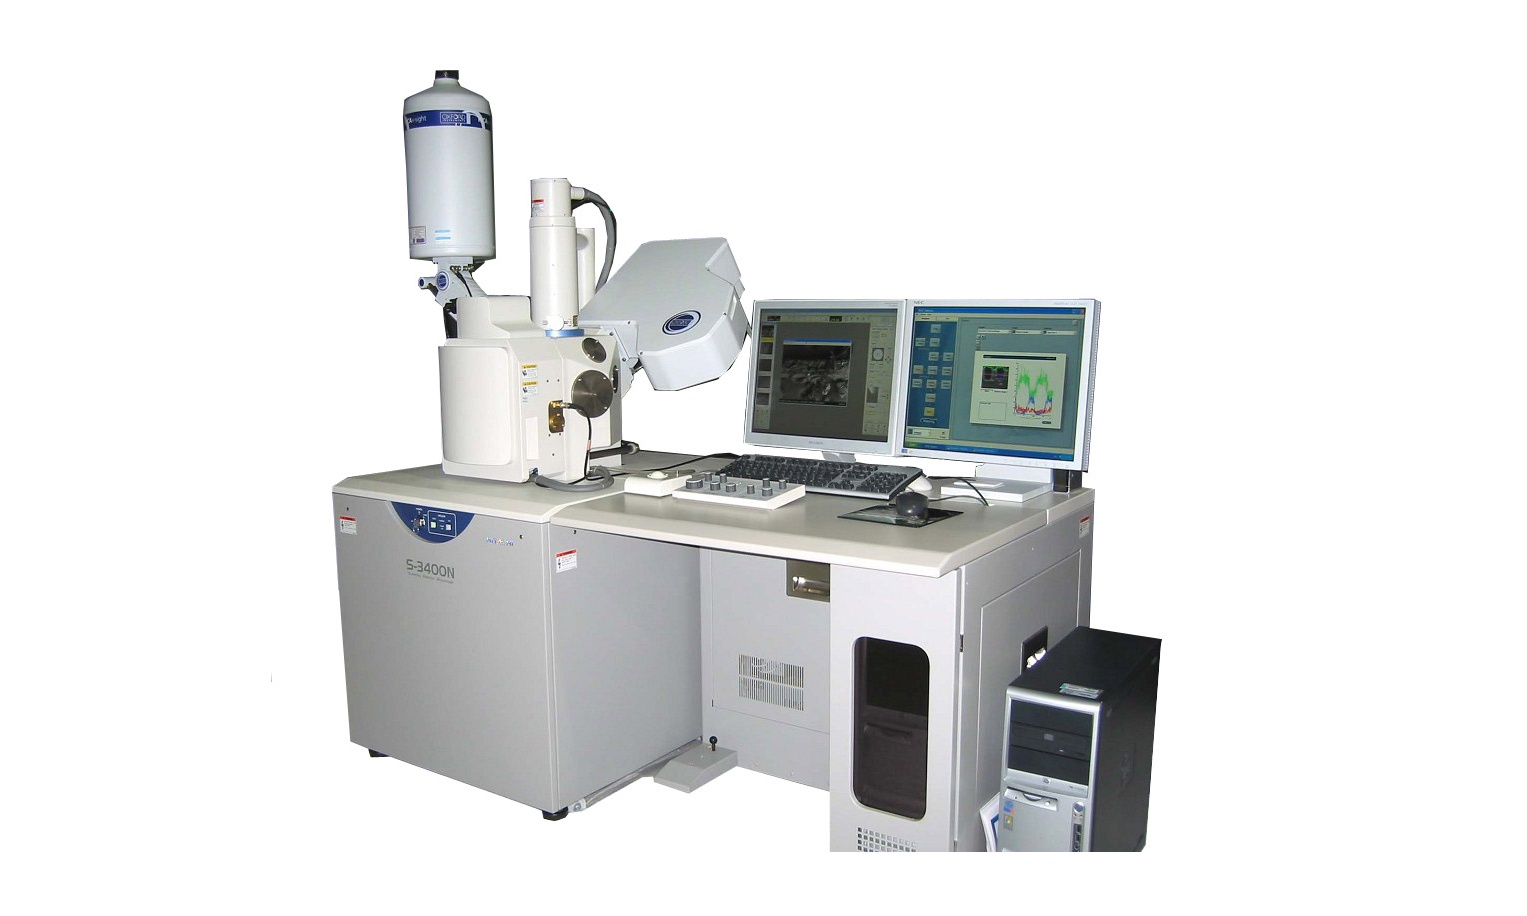 中山大学扫描电子显微镜采购项目成交公告